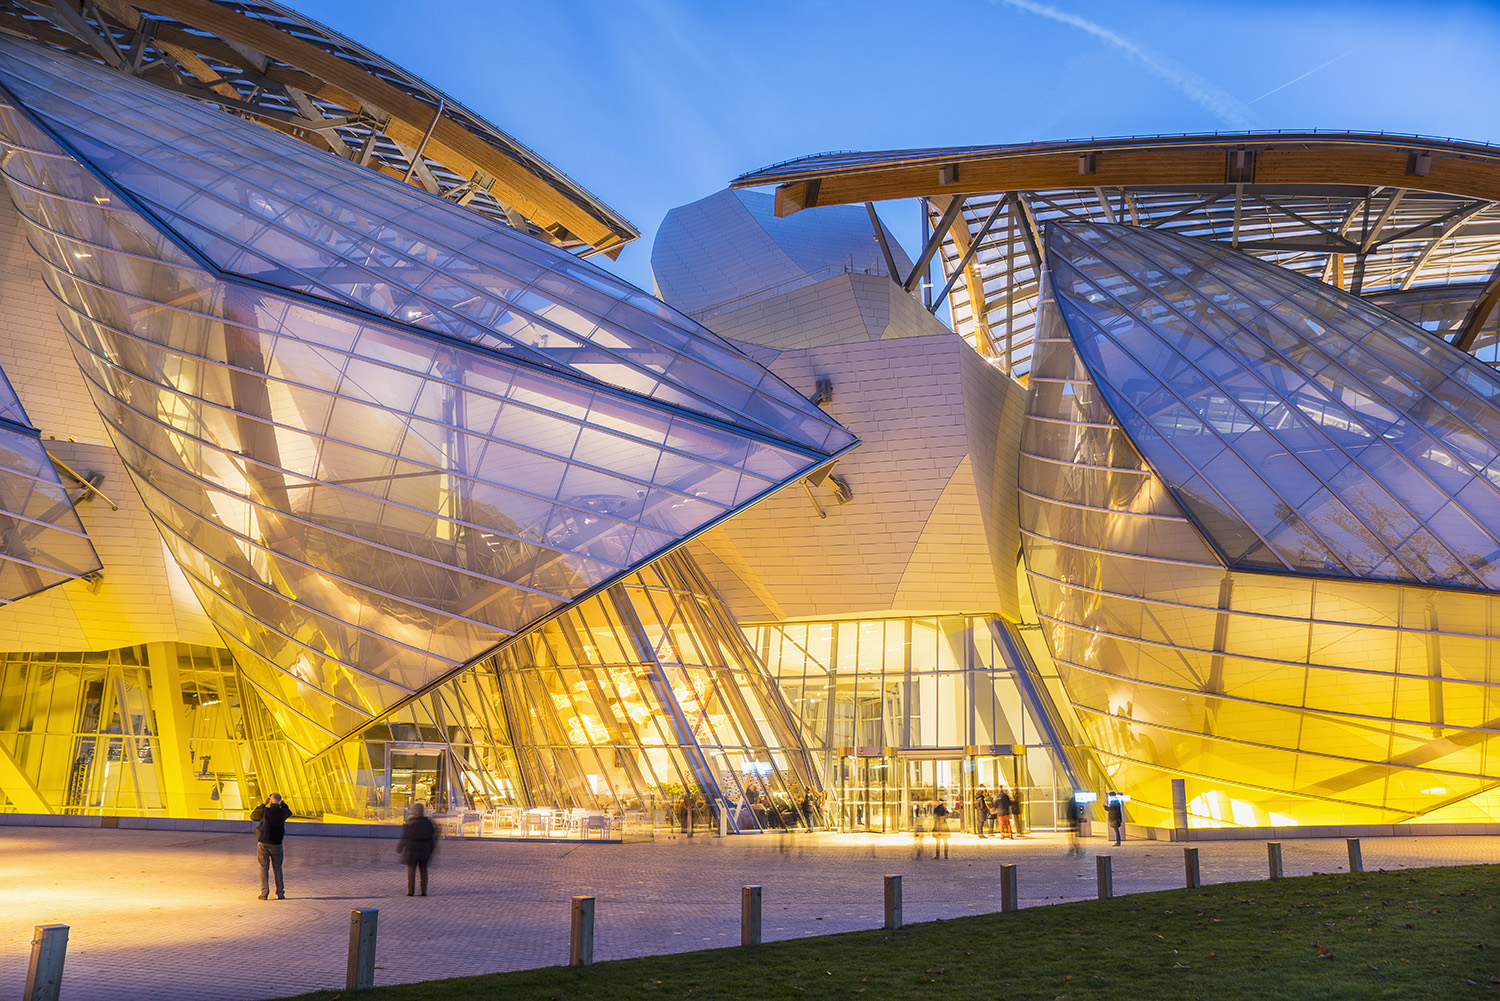 The Architecture of the Louis Vuitton Foundation Building, Paris (Image  Heavy)